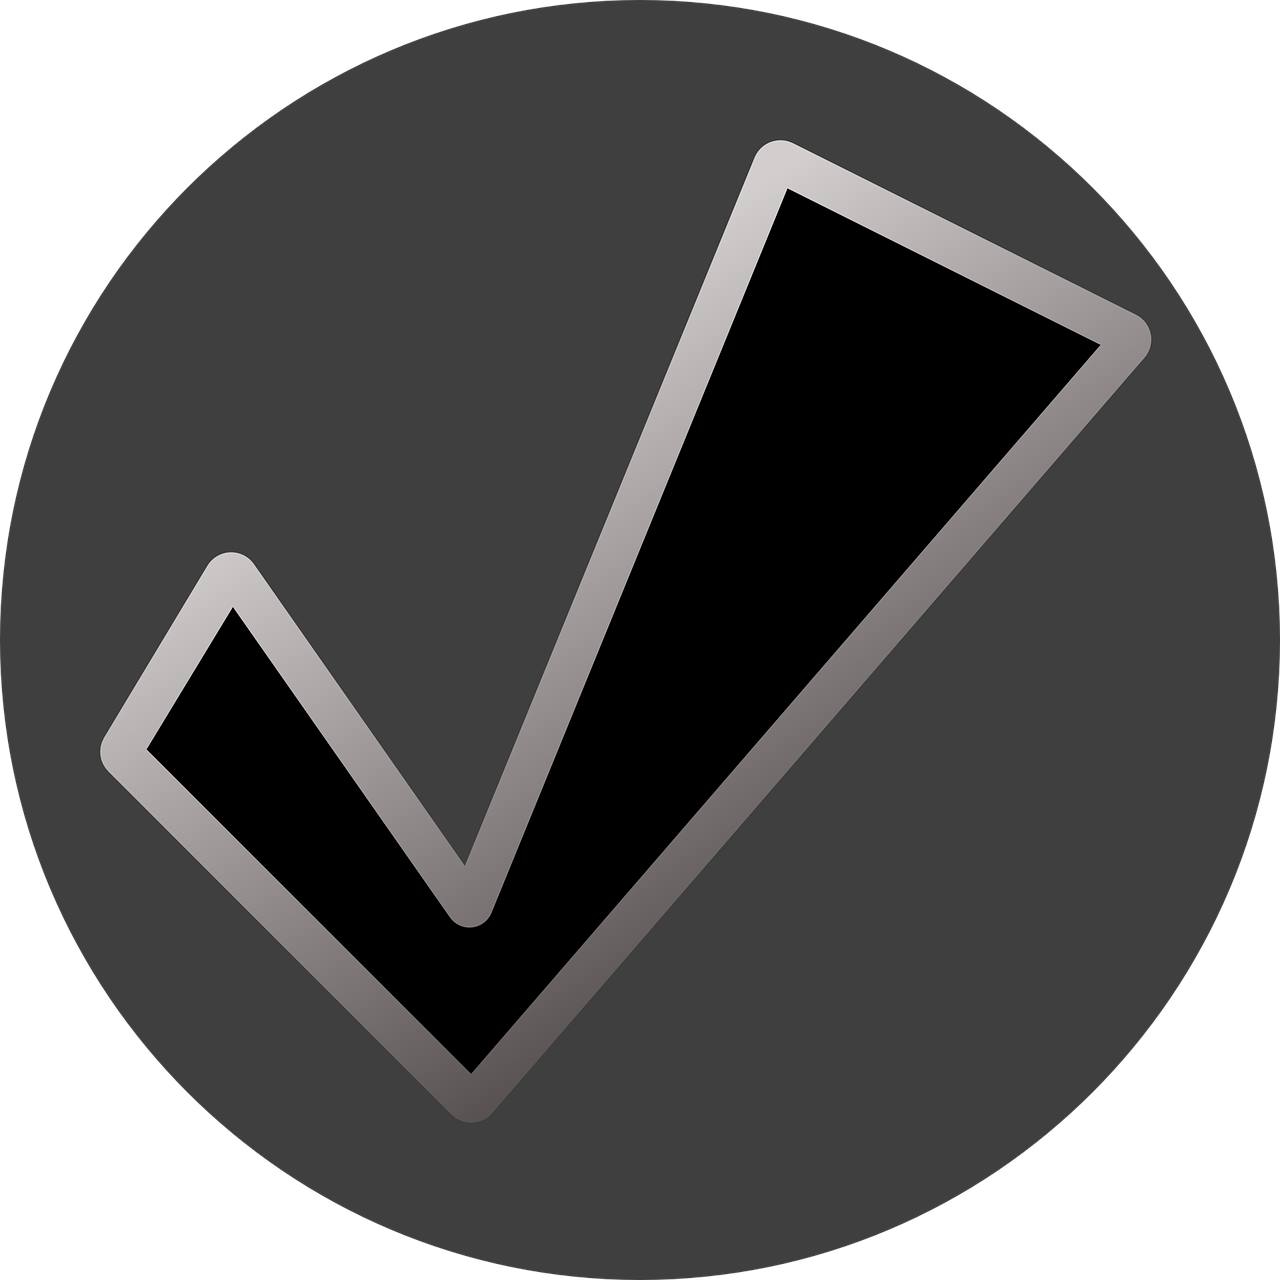 Checkmark Icon Graphic